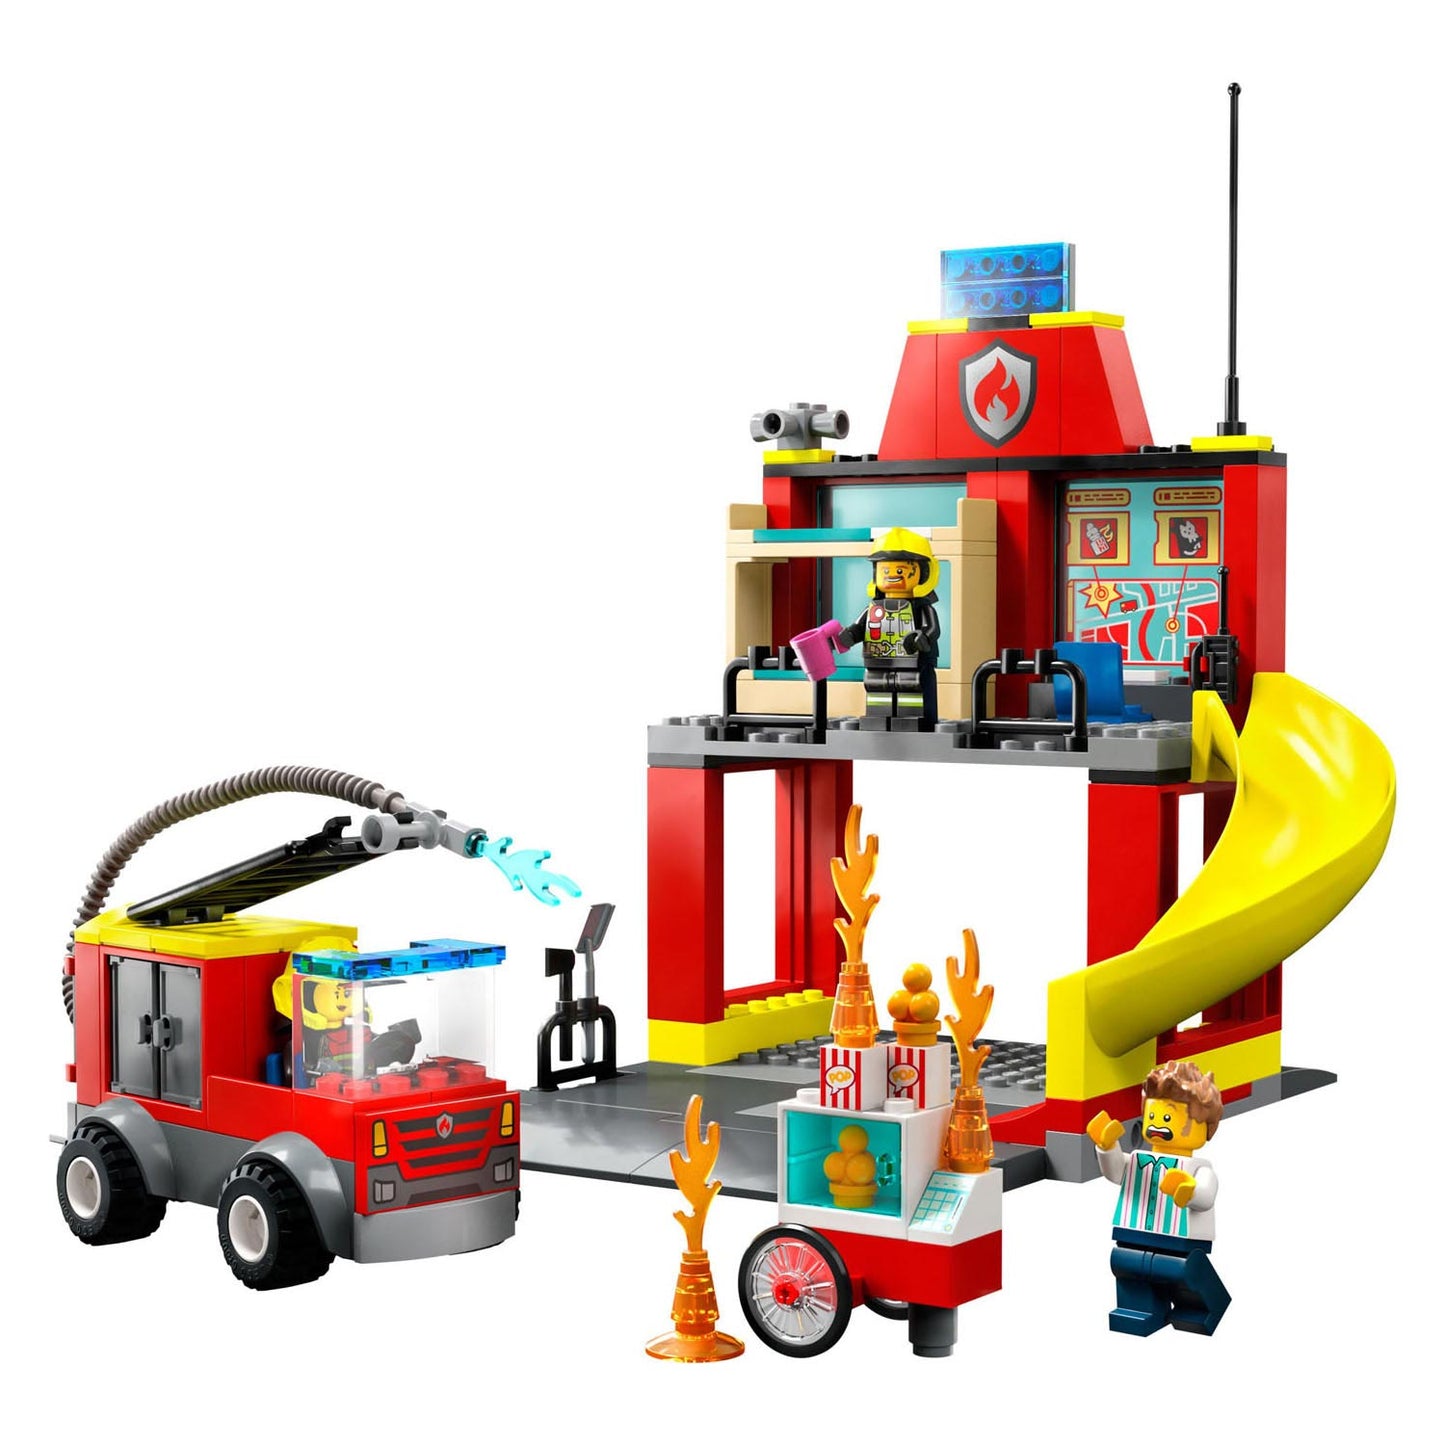 Lego LEGO City 60375 De Brandweerkazerne en de Brandweerwagen